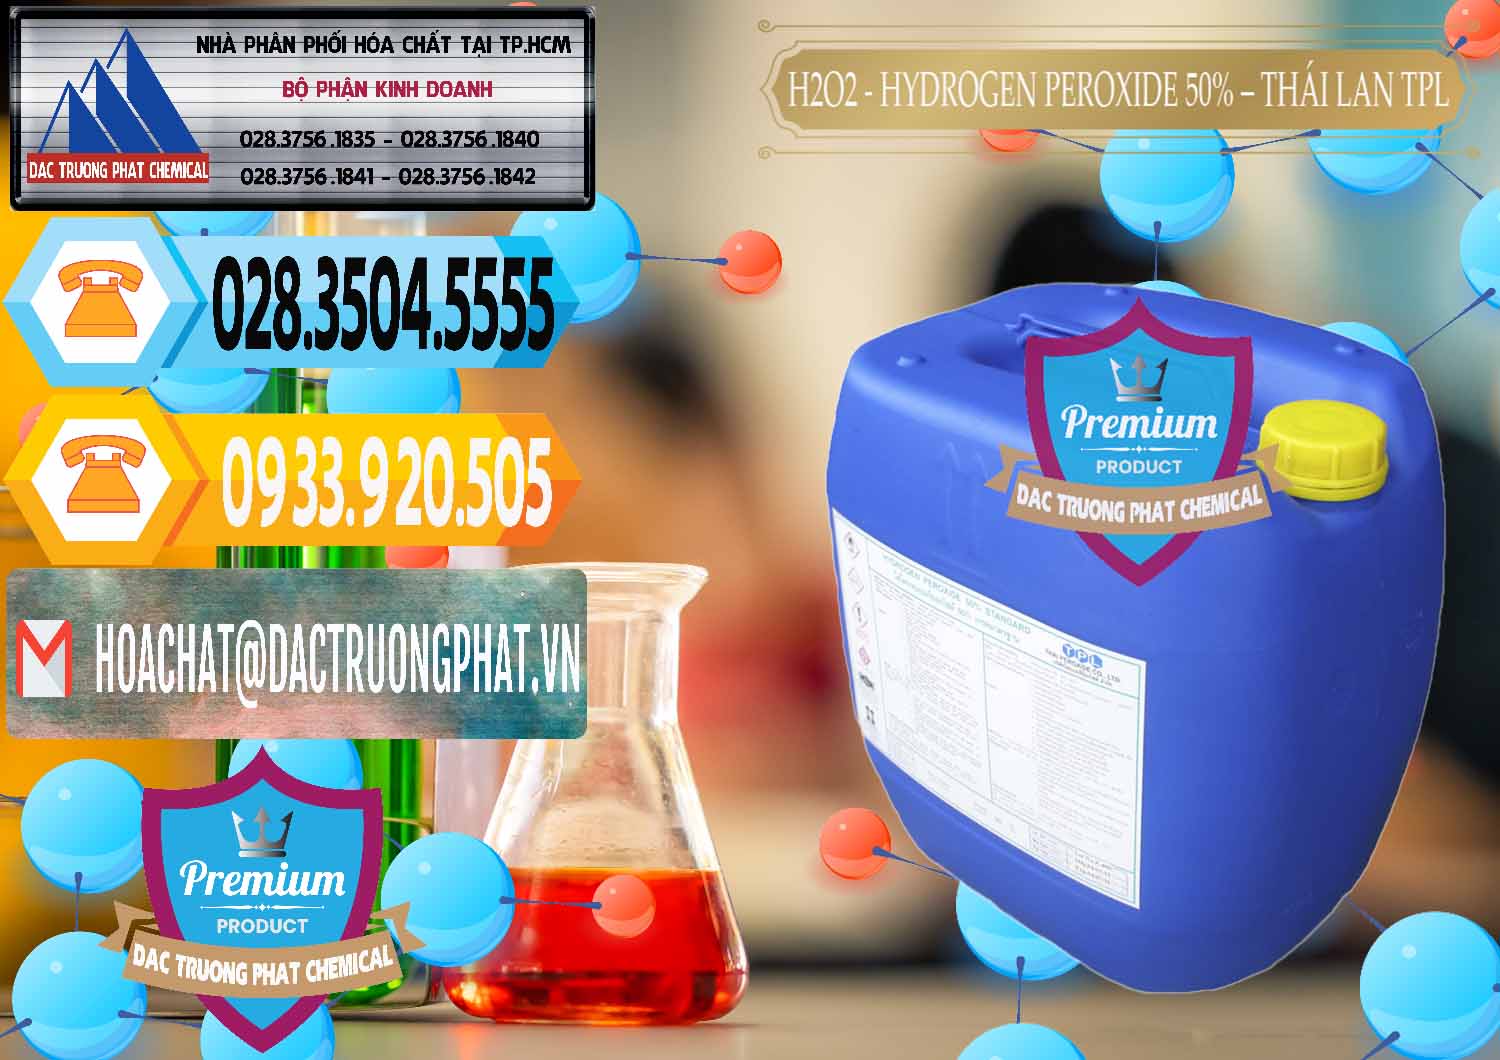 Cty cung cấp & bán H2O2 - Hydrogen Peroxide 50% Thái Lan TPL - 0076 - Cty chuyên cung ứng - phân phối hóa chất tại TP.HCM - hoachattayrua.net